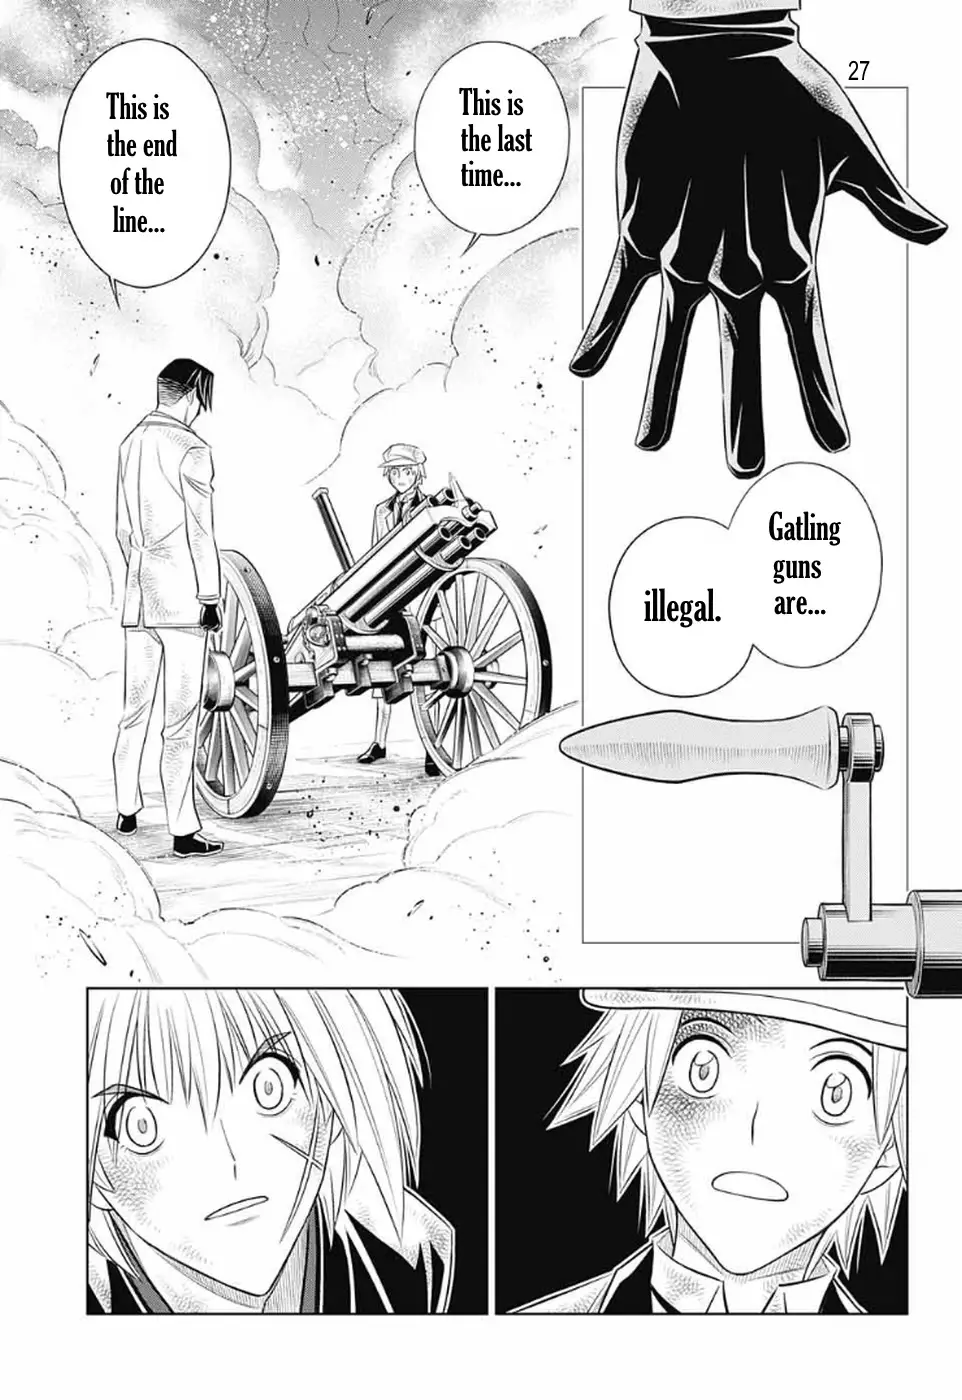 Rurouni Kenshin: Hokkaido Arc - 33 page 25